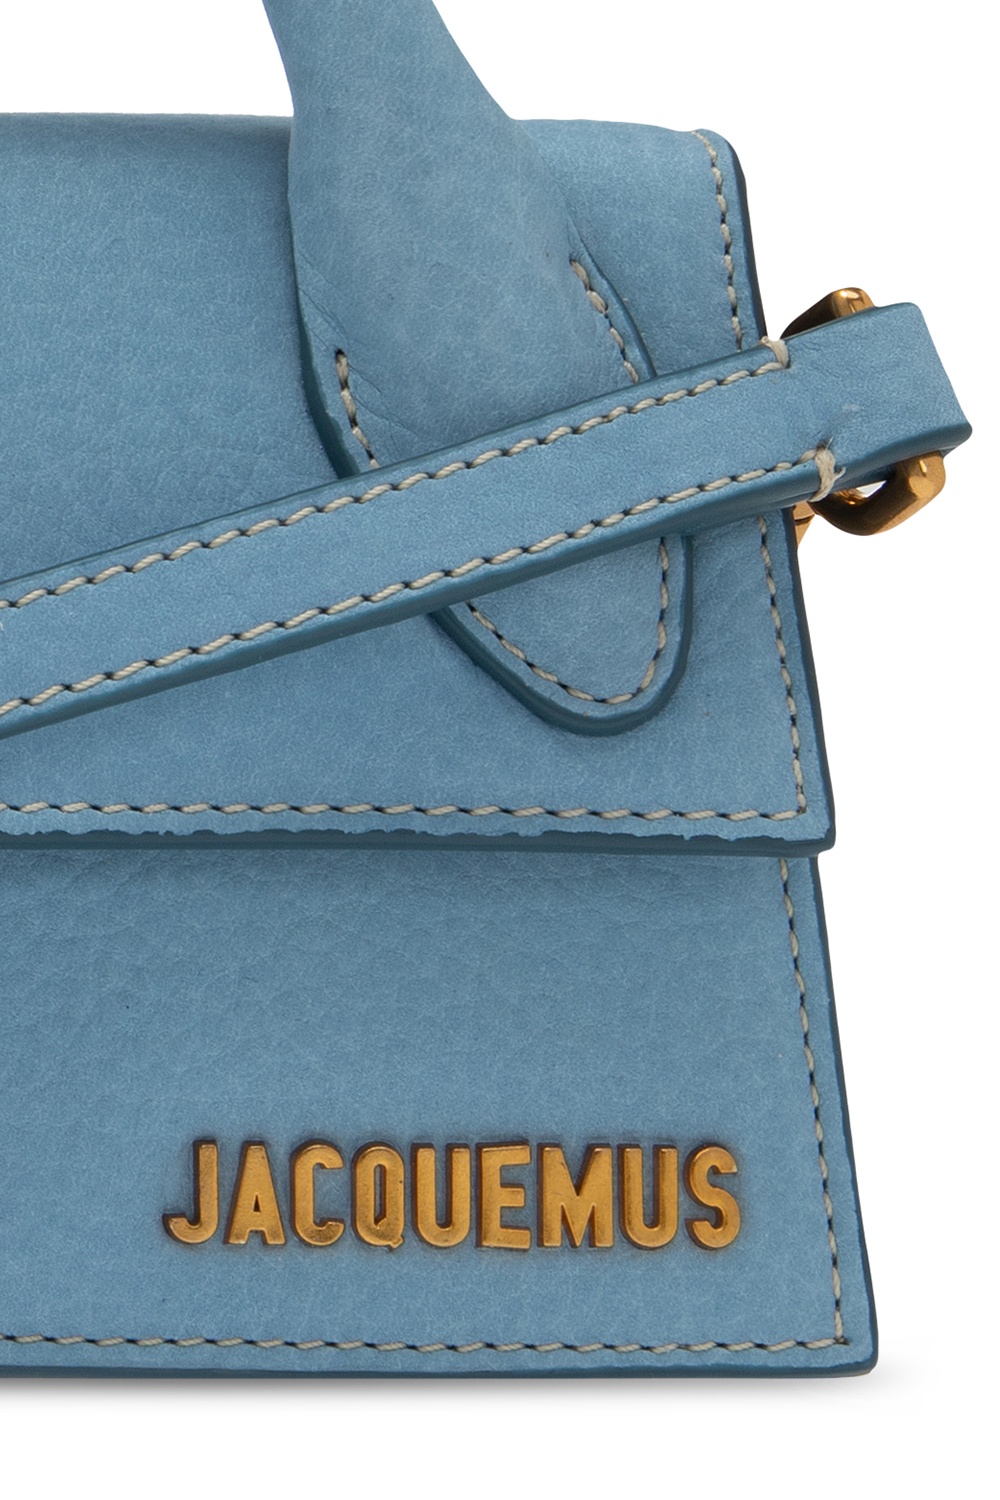 Jacquemus 'Le Chiquito Long' shoulder bag | Women's Bags | Vitkac